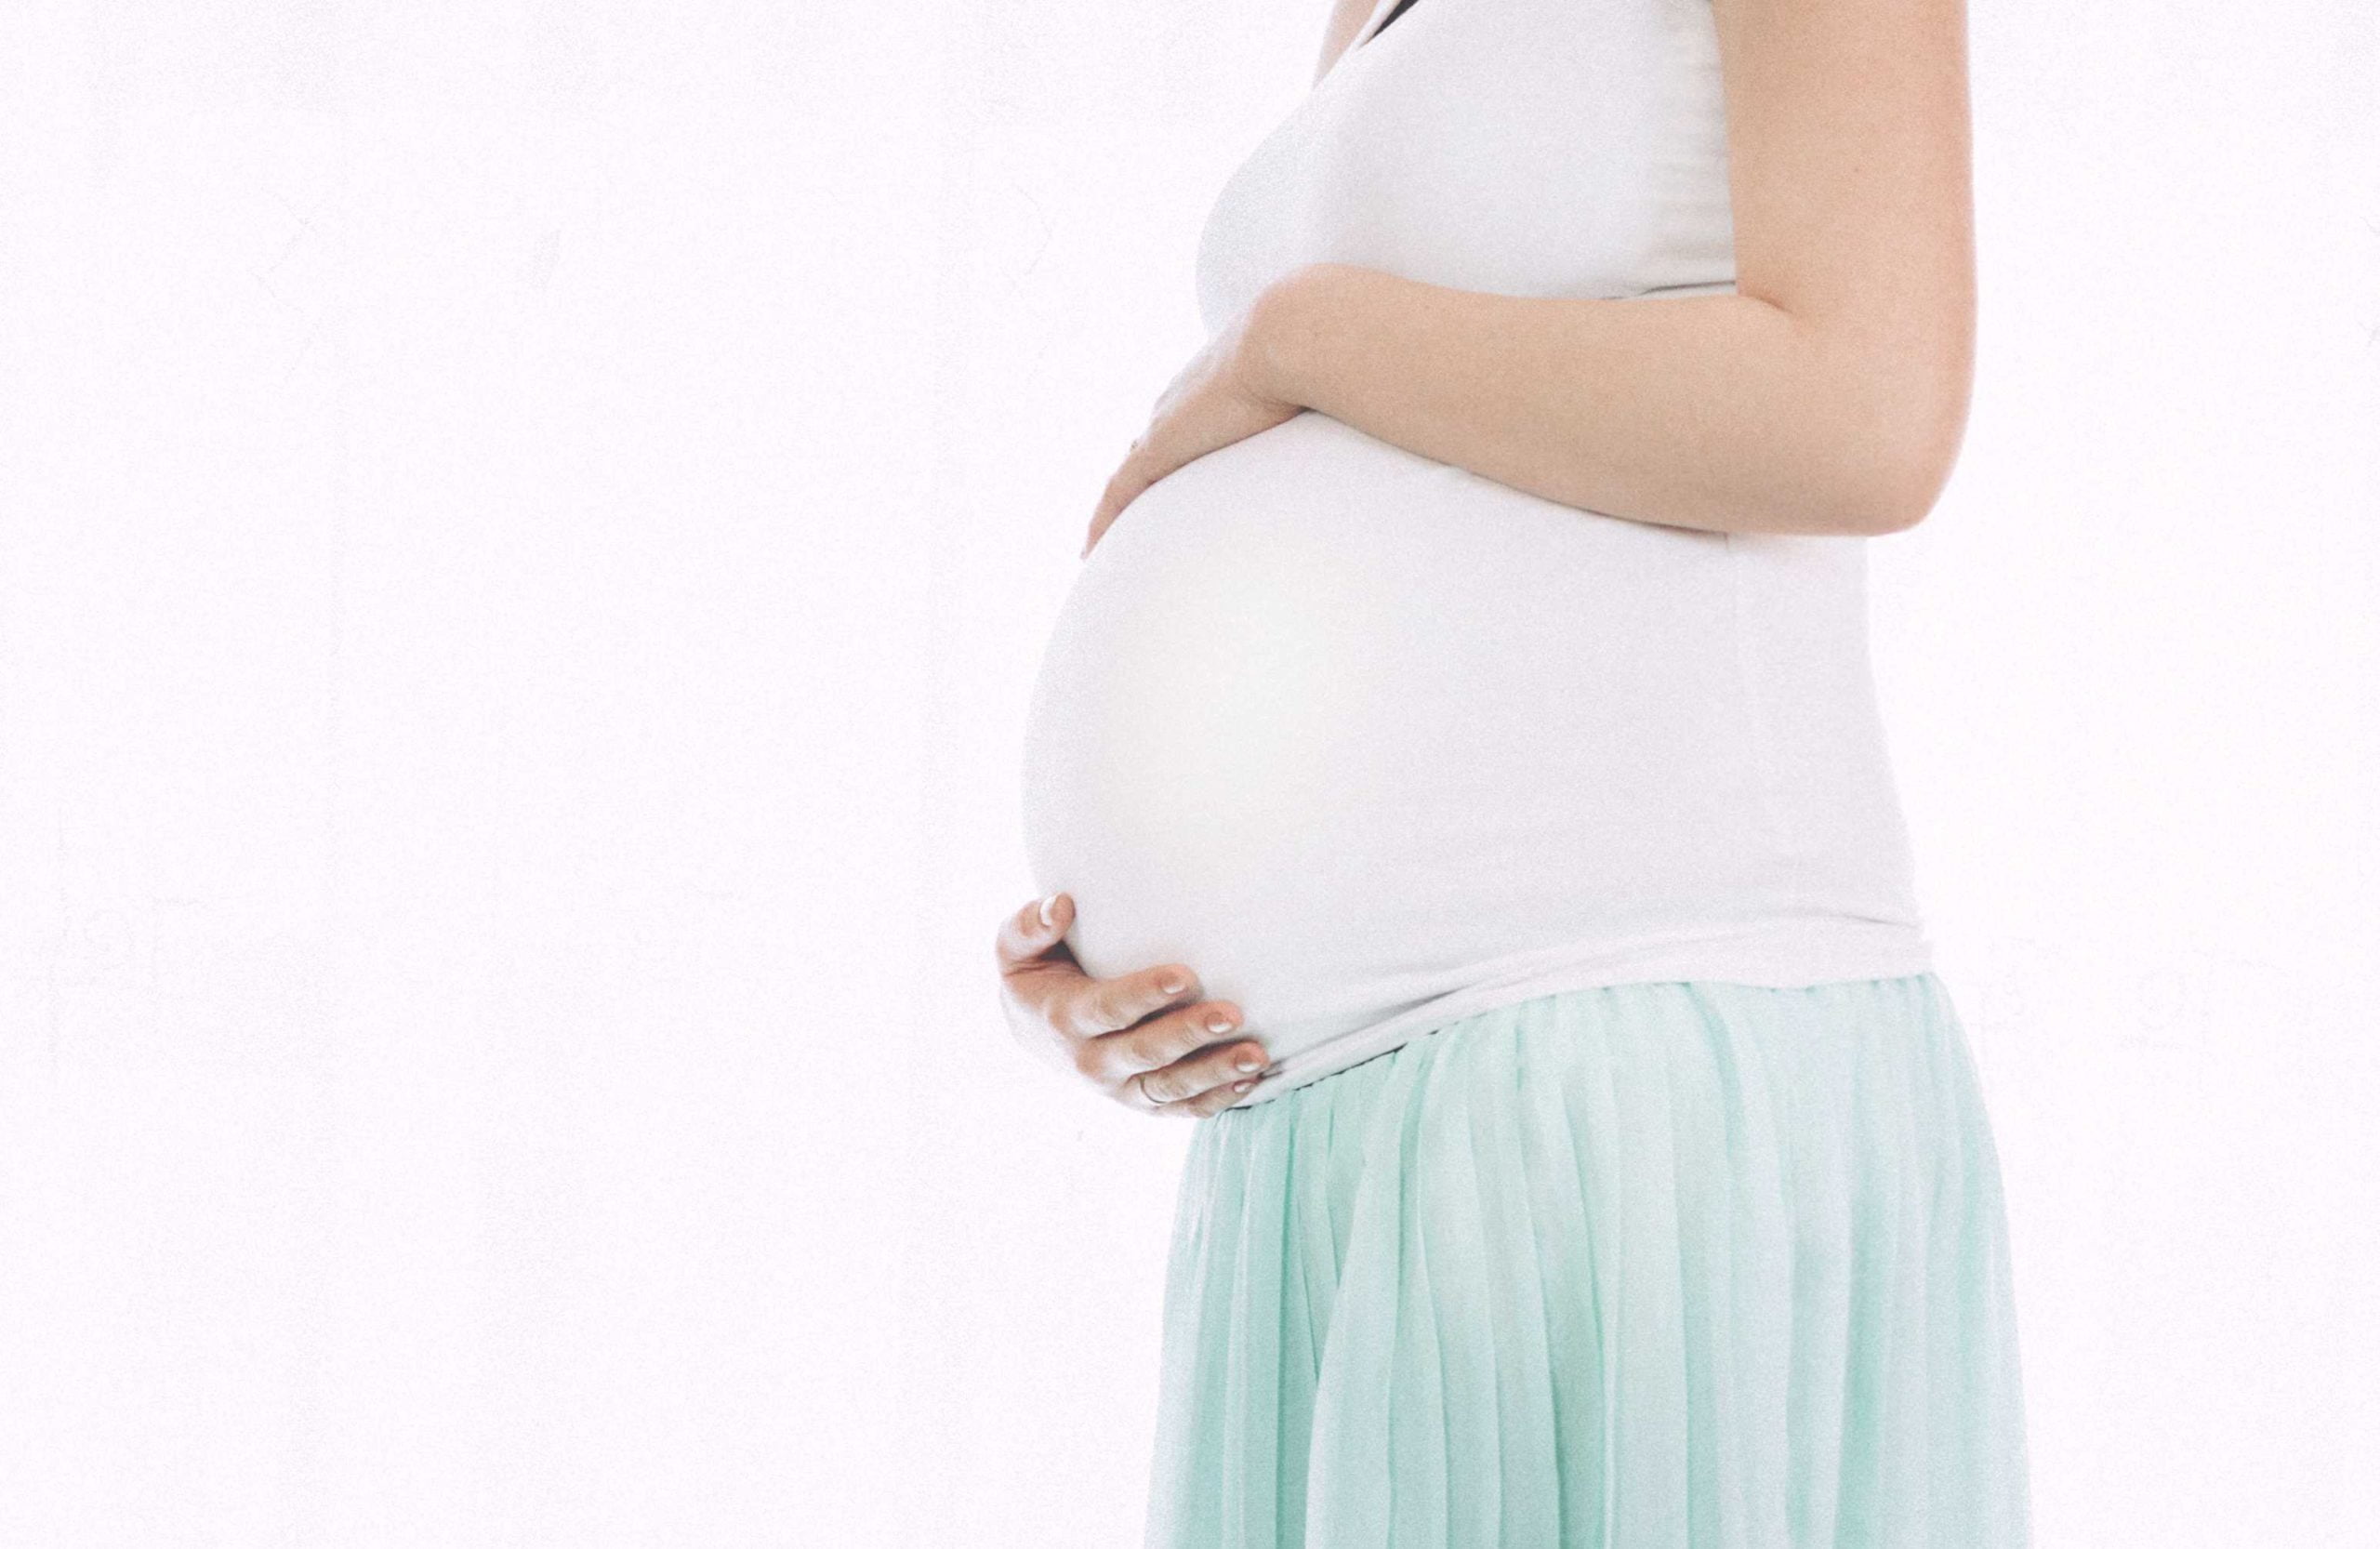 Na sliki je nosečnica, ki se drži za trebuh kjer se nahaja dojenček, slika se uporablja za članek cbd in nosečnost.